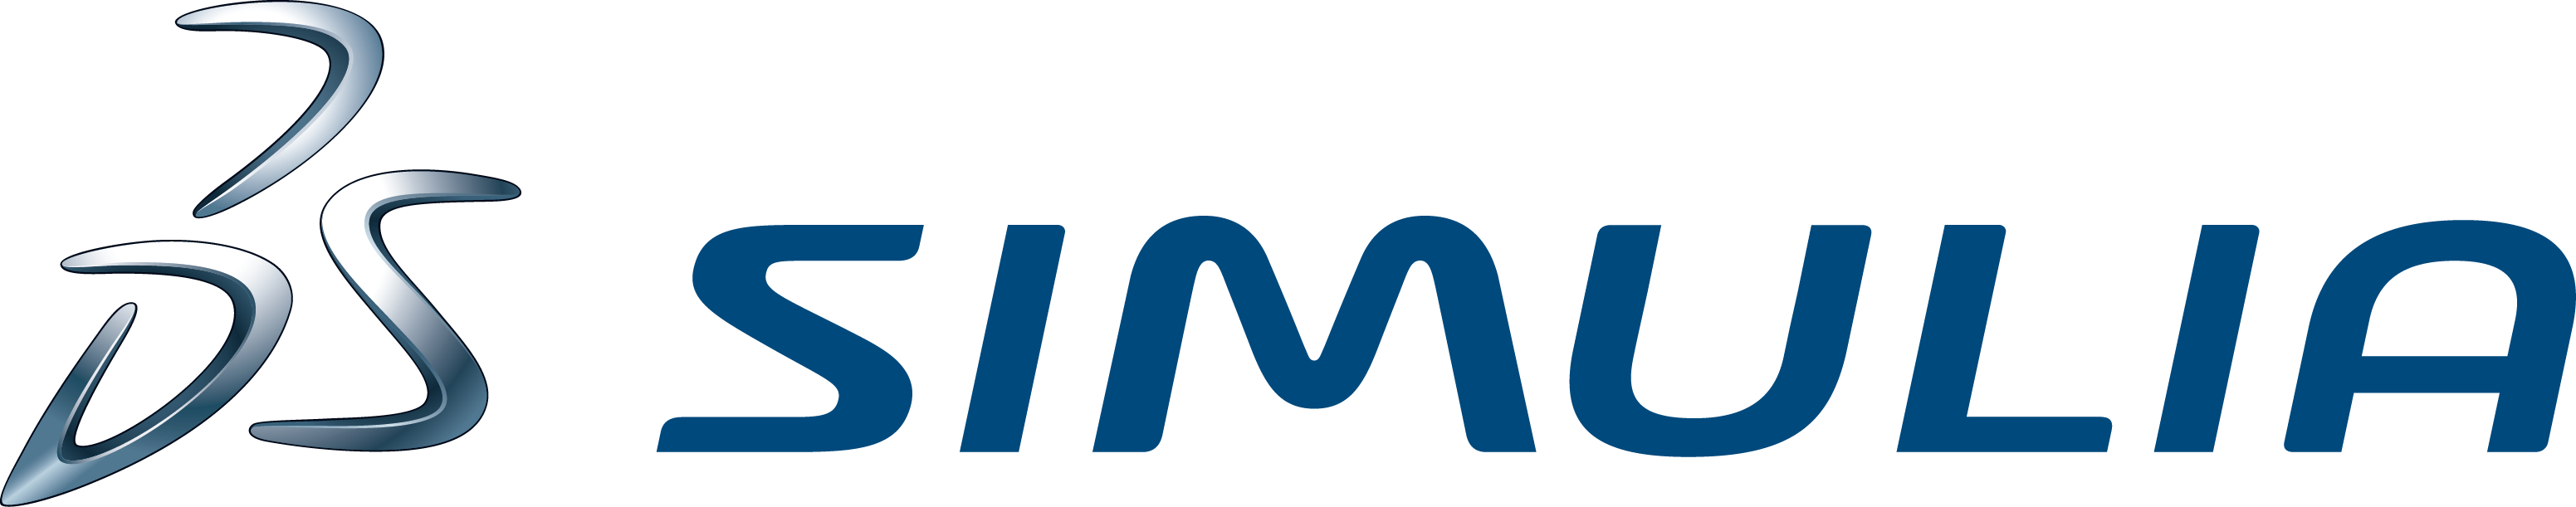 SIMULIA Logotype CMYK NewBlueSteel